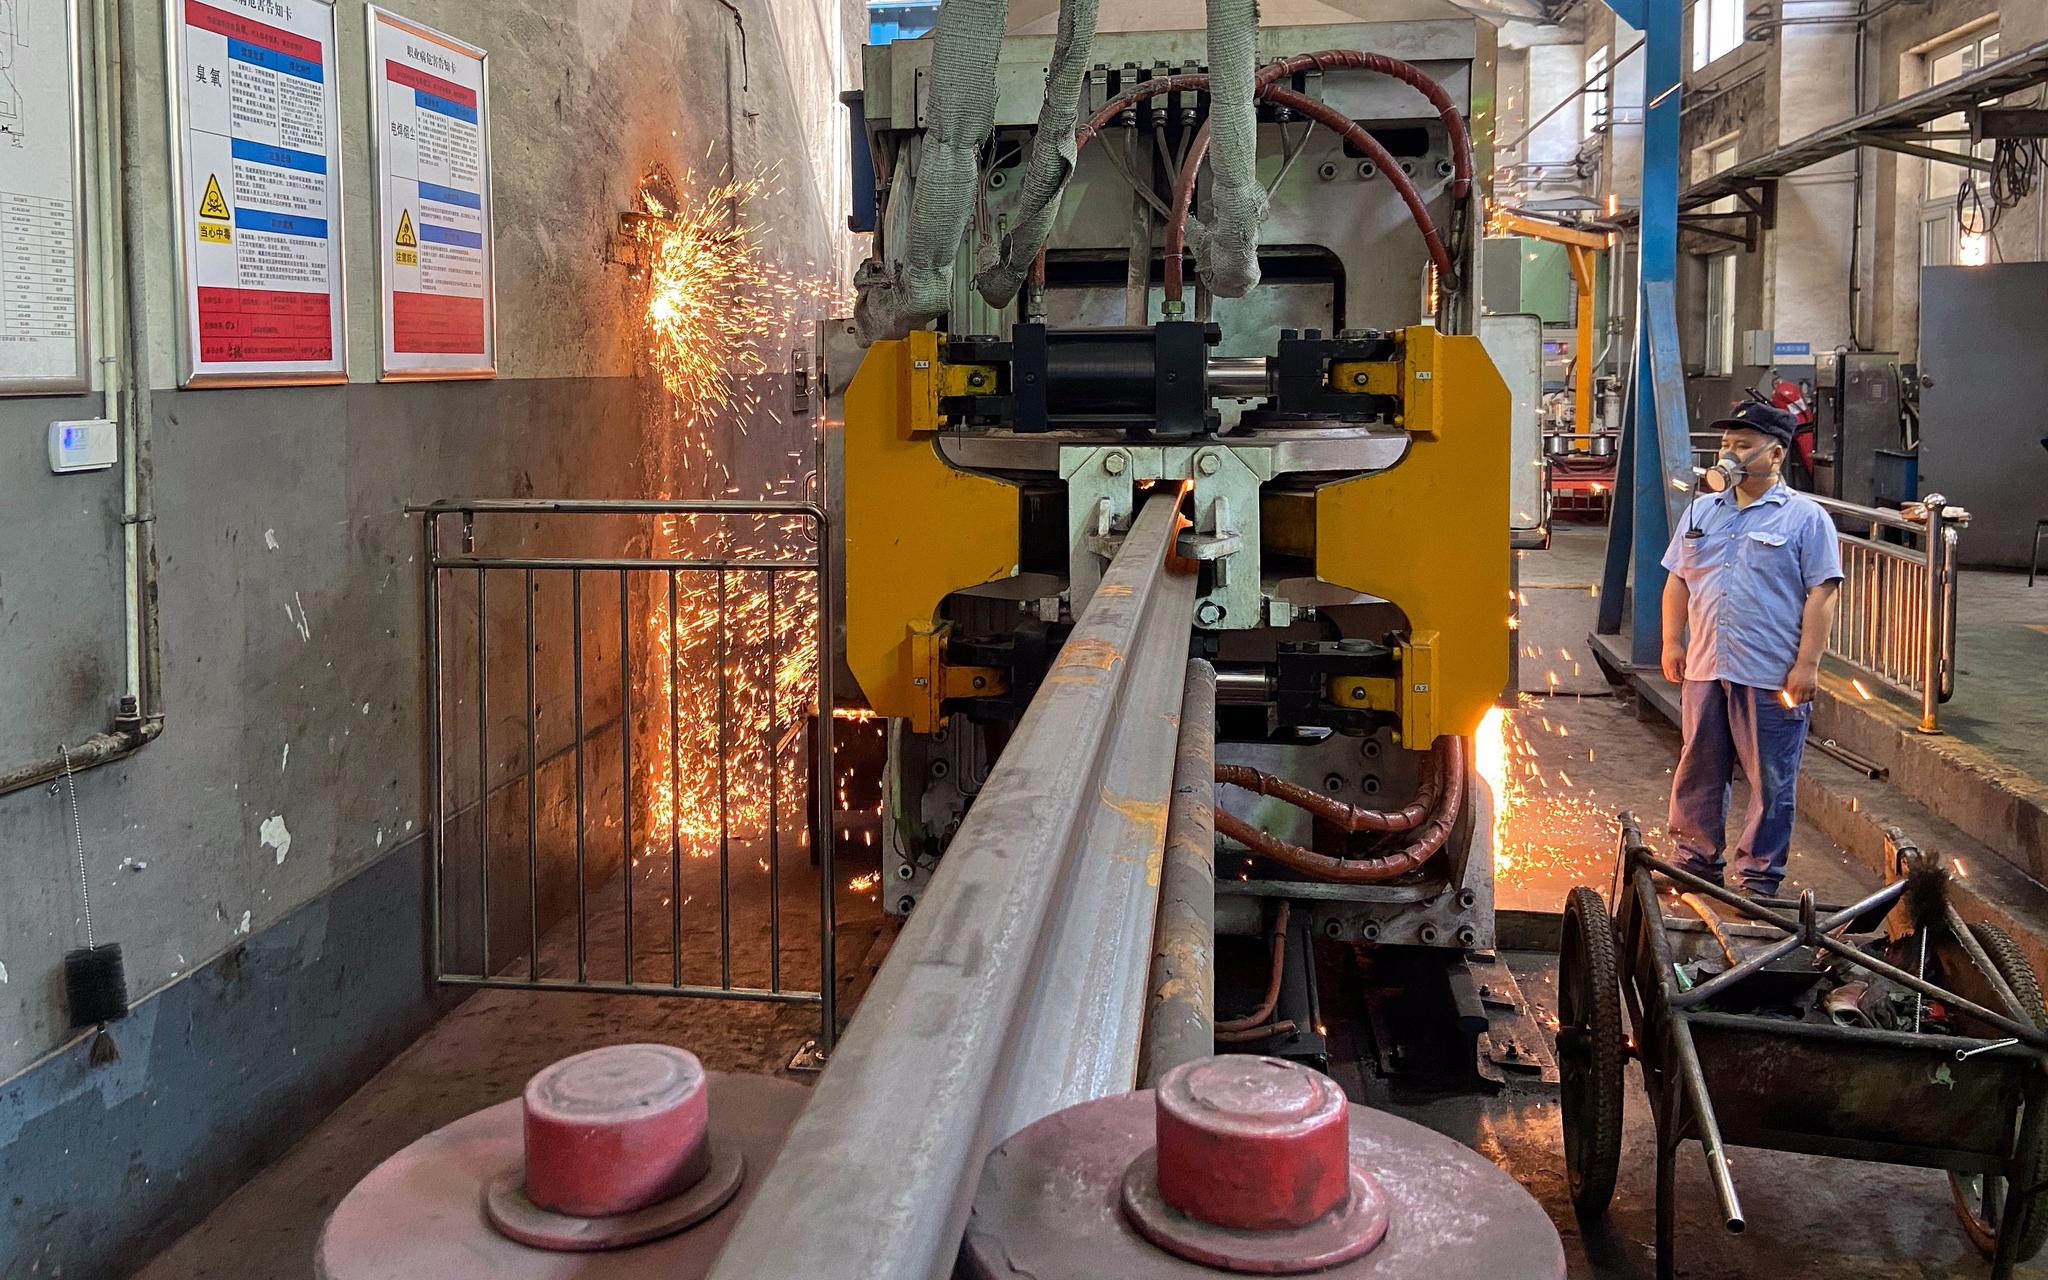  北京工电大修段焊轨基地，工人在生产线上焊接钢轨。摄影/新京报记者 王贵彬